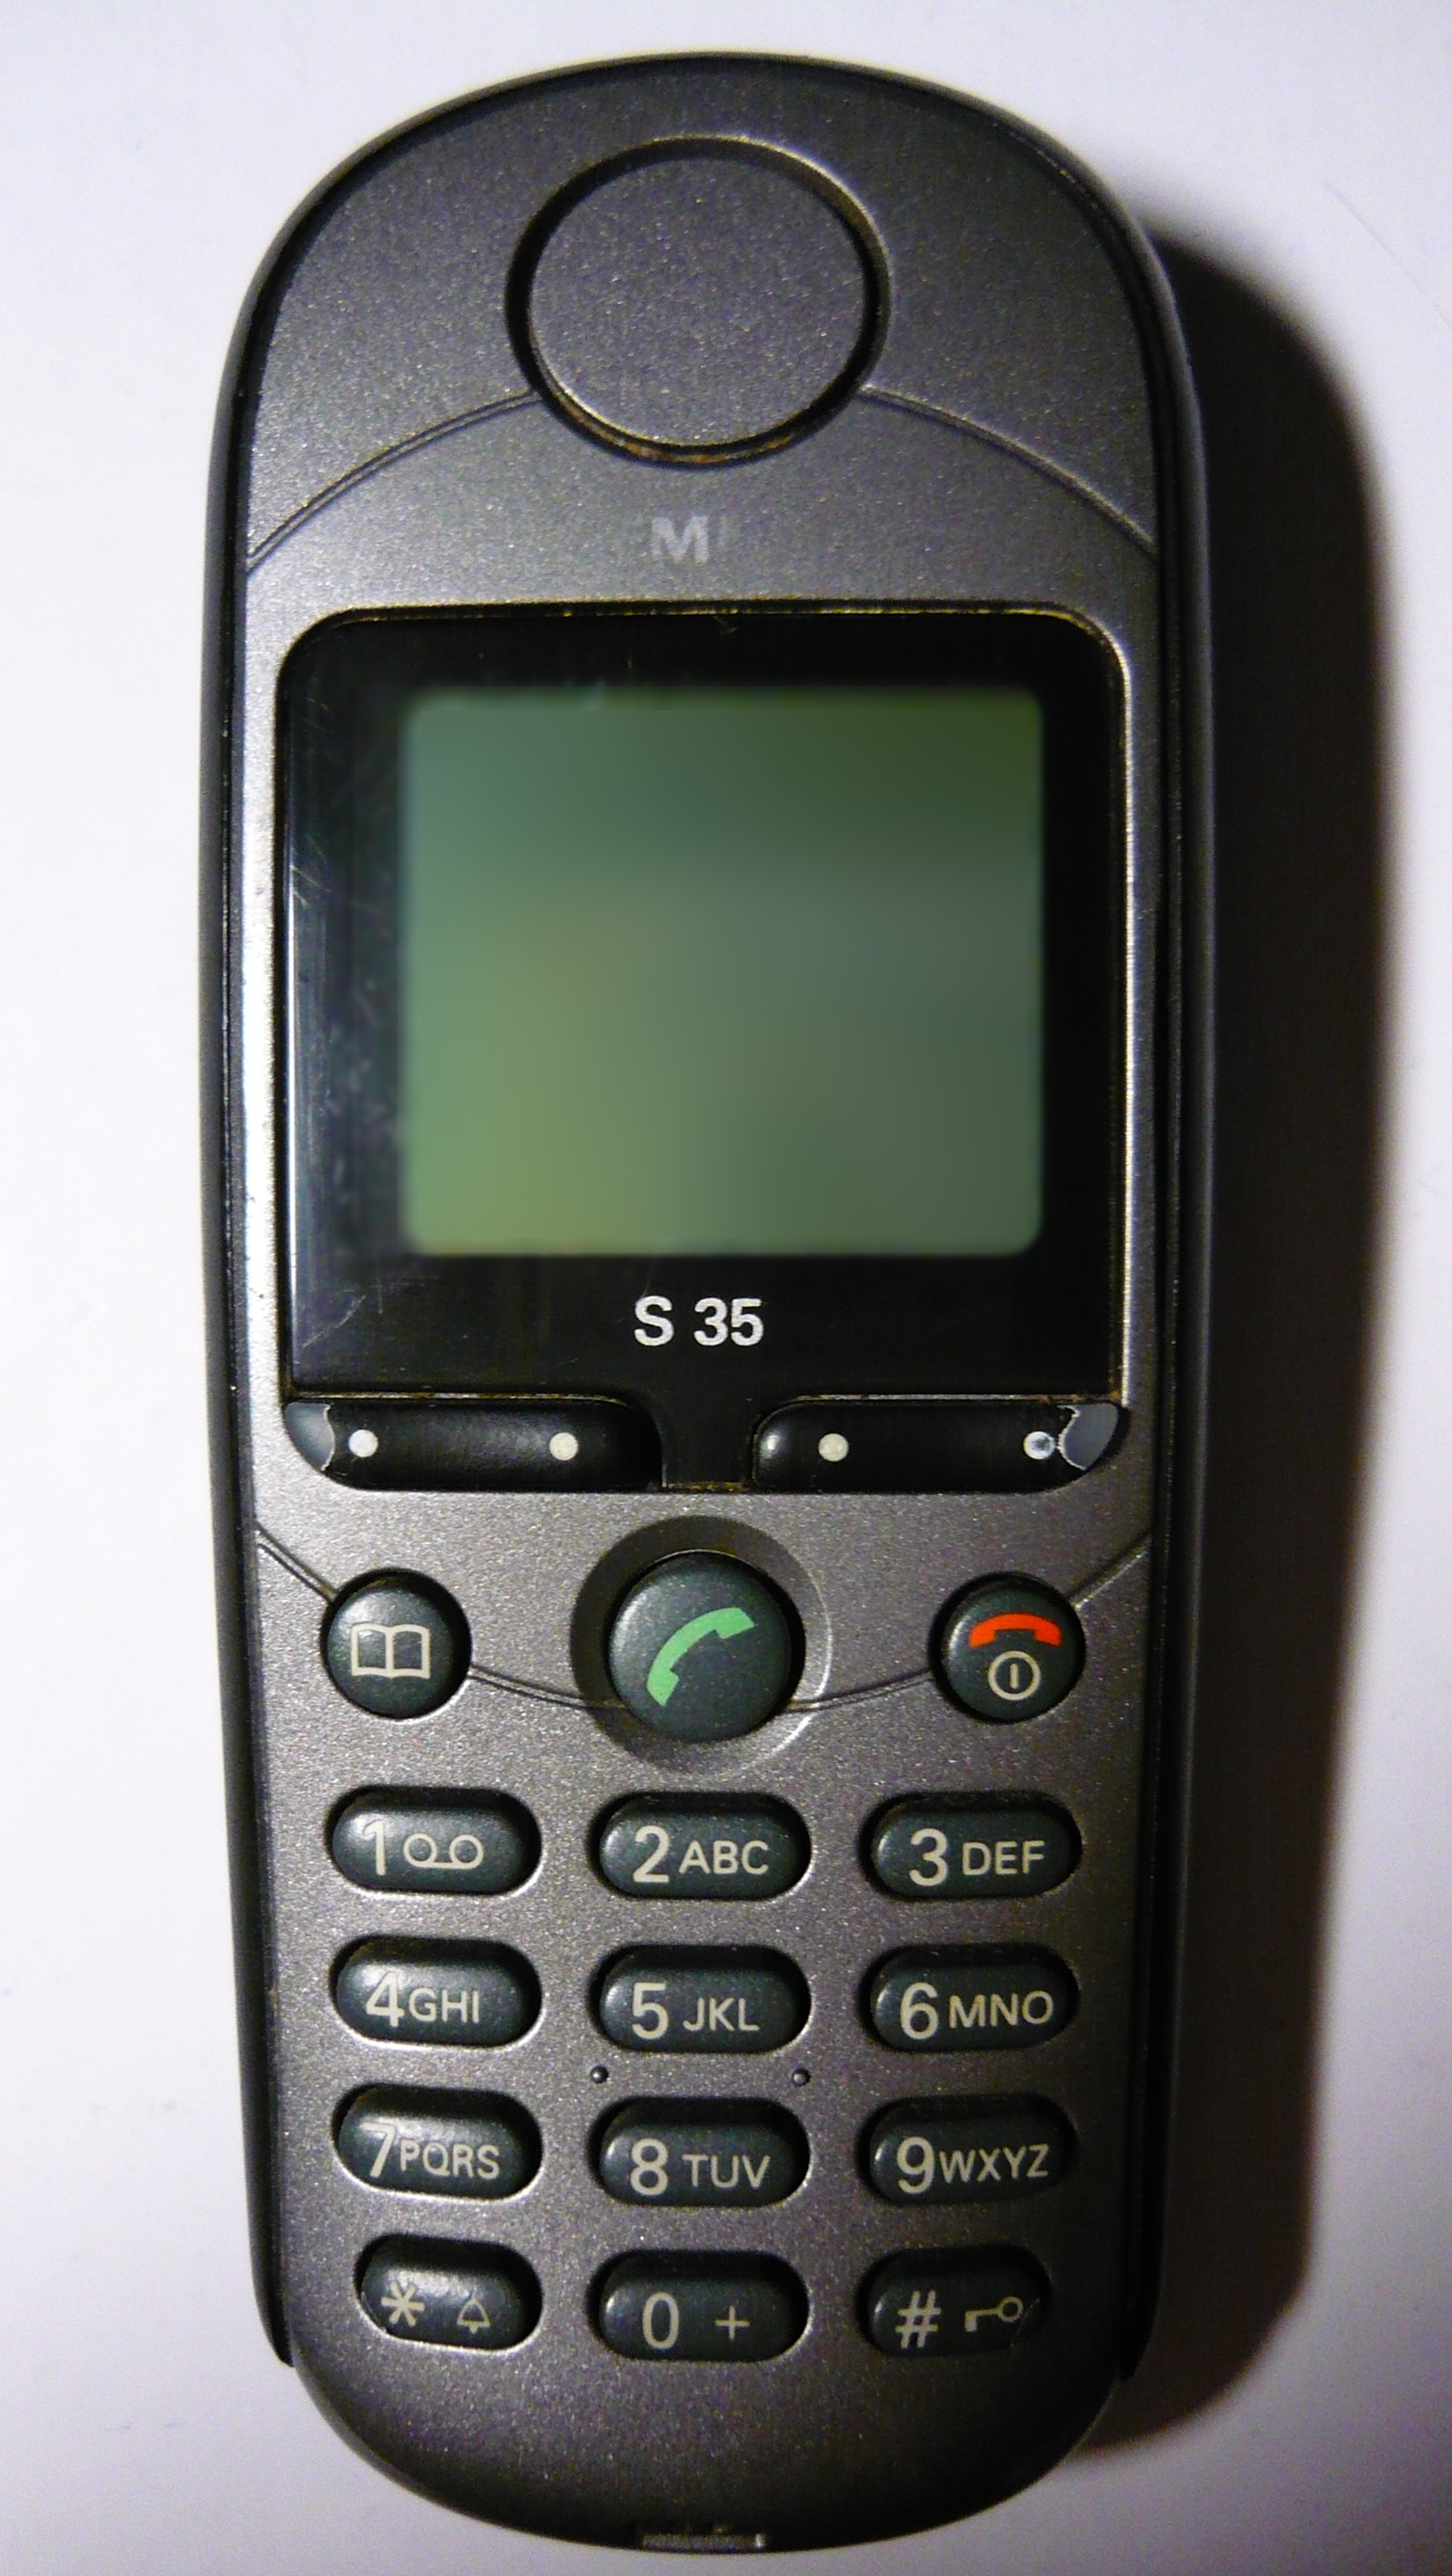 File:Siemens S35 Mobile Phone.JPG